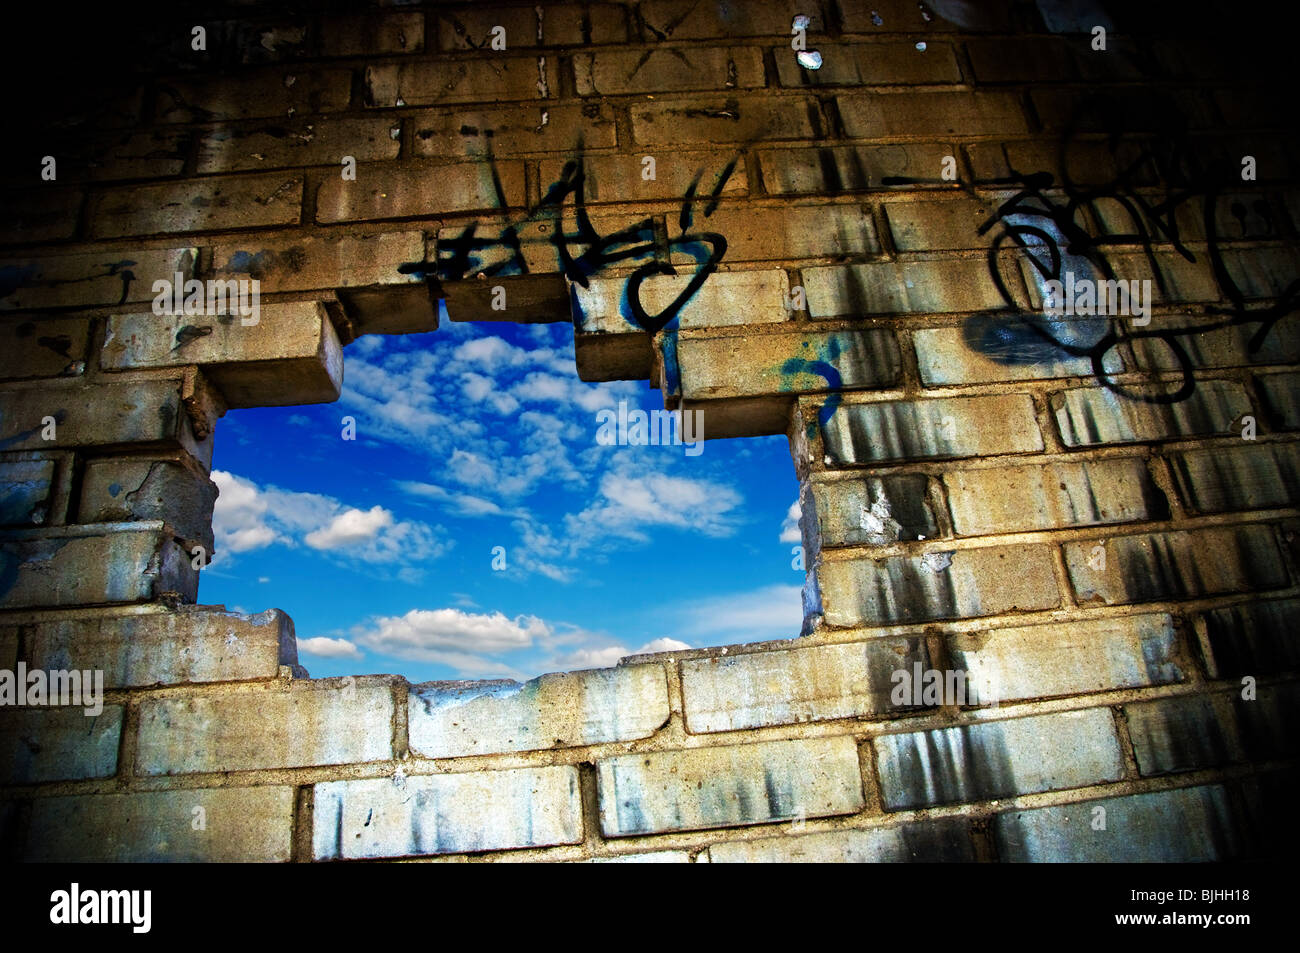 Loch in einer Wand, blauen Himmel durchschauen Stockfoto